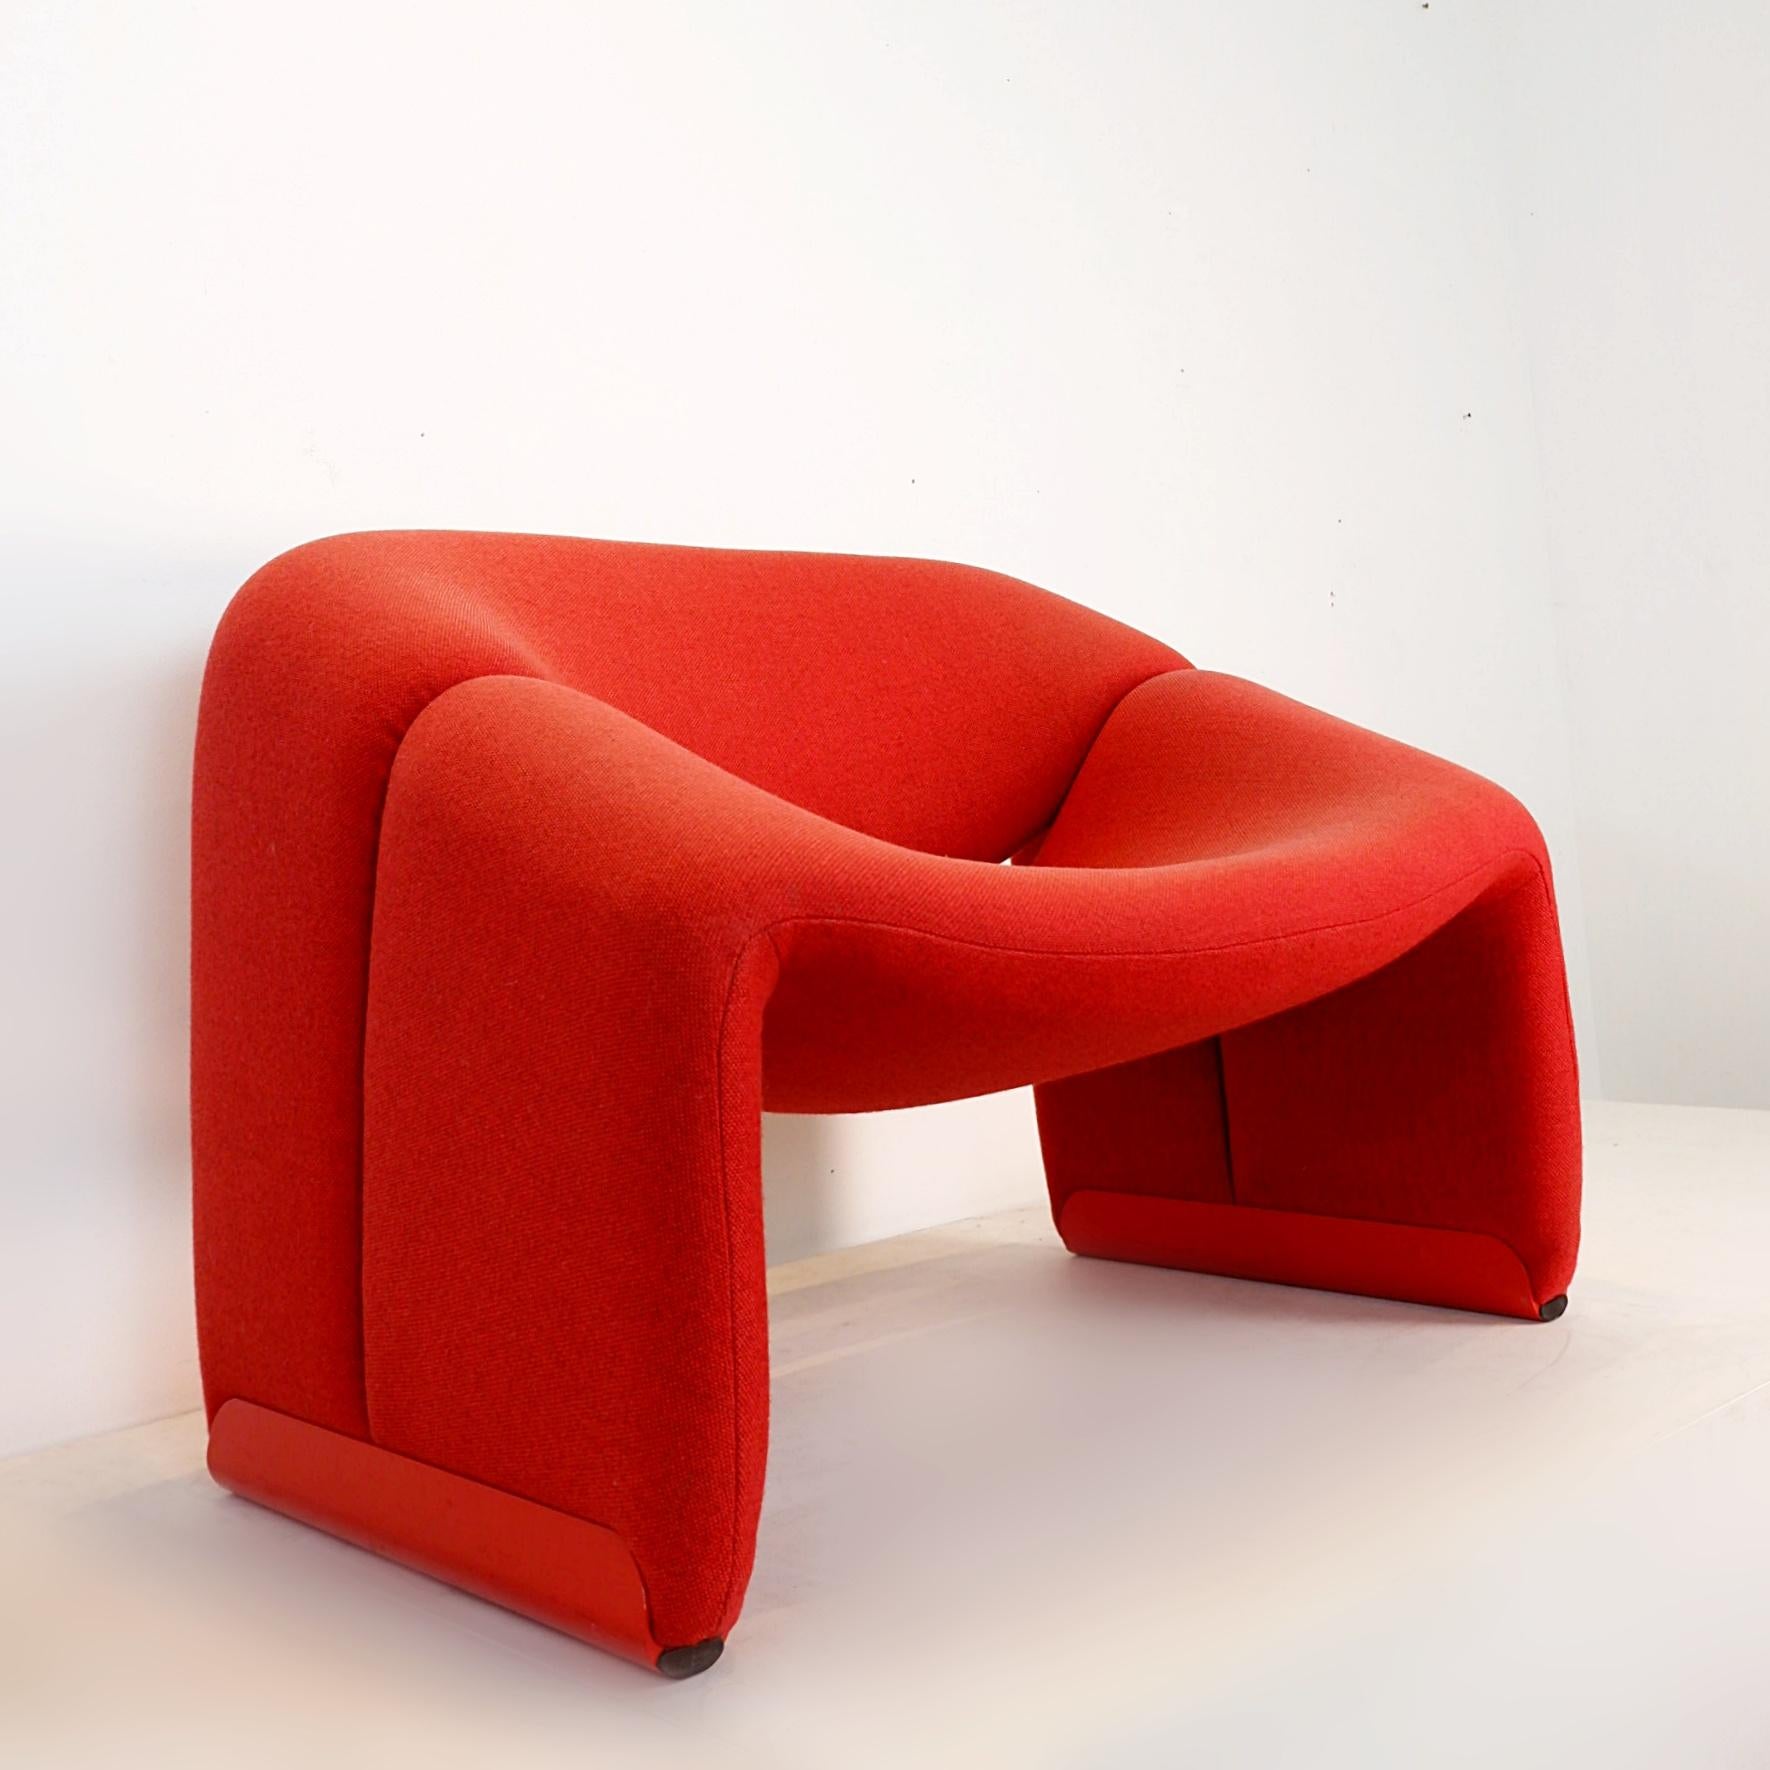 Ikonischer Groovy-Sessel, entworfen vom französischen Designer Pierre Paulin für den niederländischen Herausgeber Artifort. Ihre Collaboration war sehr fruchtbar. Die Popularität ihrer Werke erreichte ihren Höhepunkt mit dem Weltraumzeitalter, was